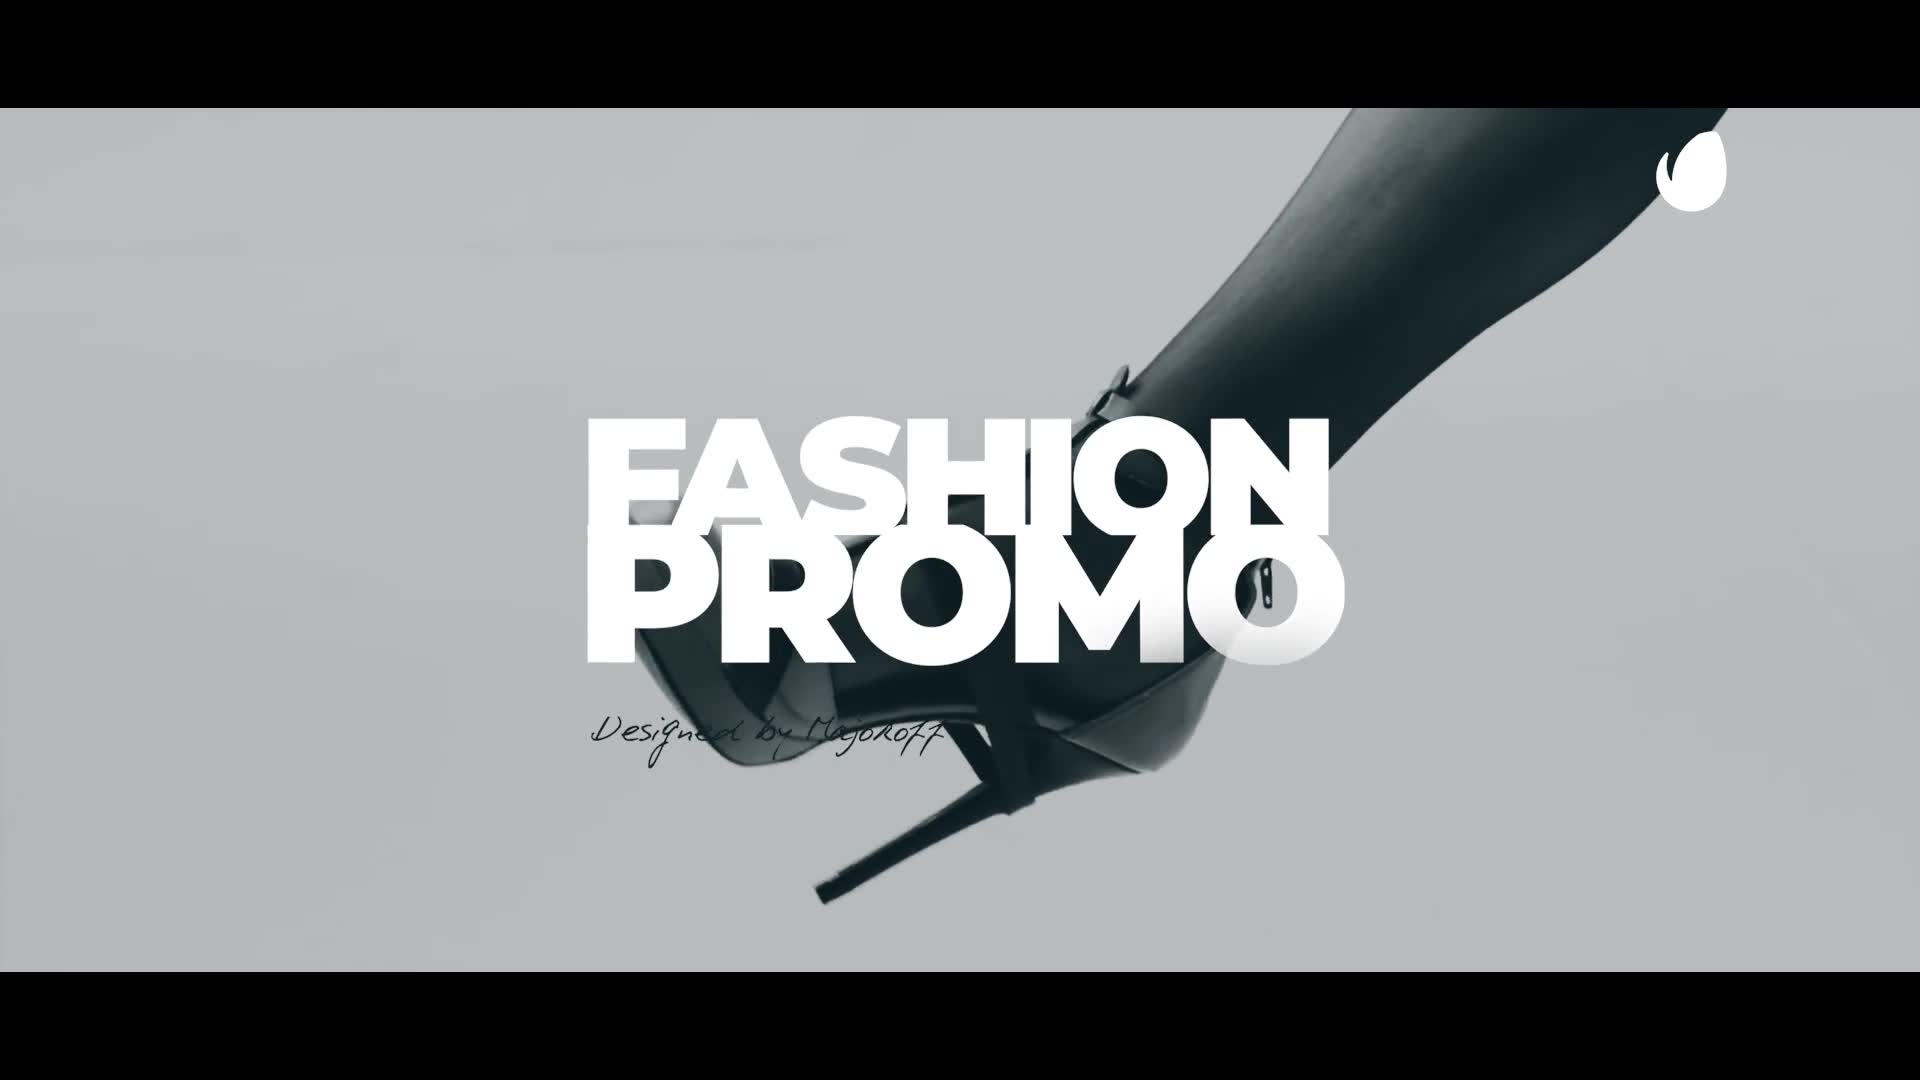 Fashion Promo Videohive 27579890 Premiere Pro Image 2